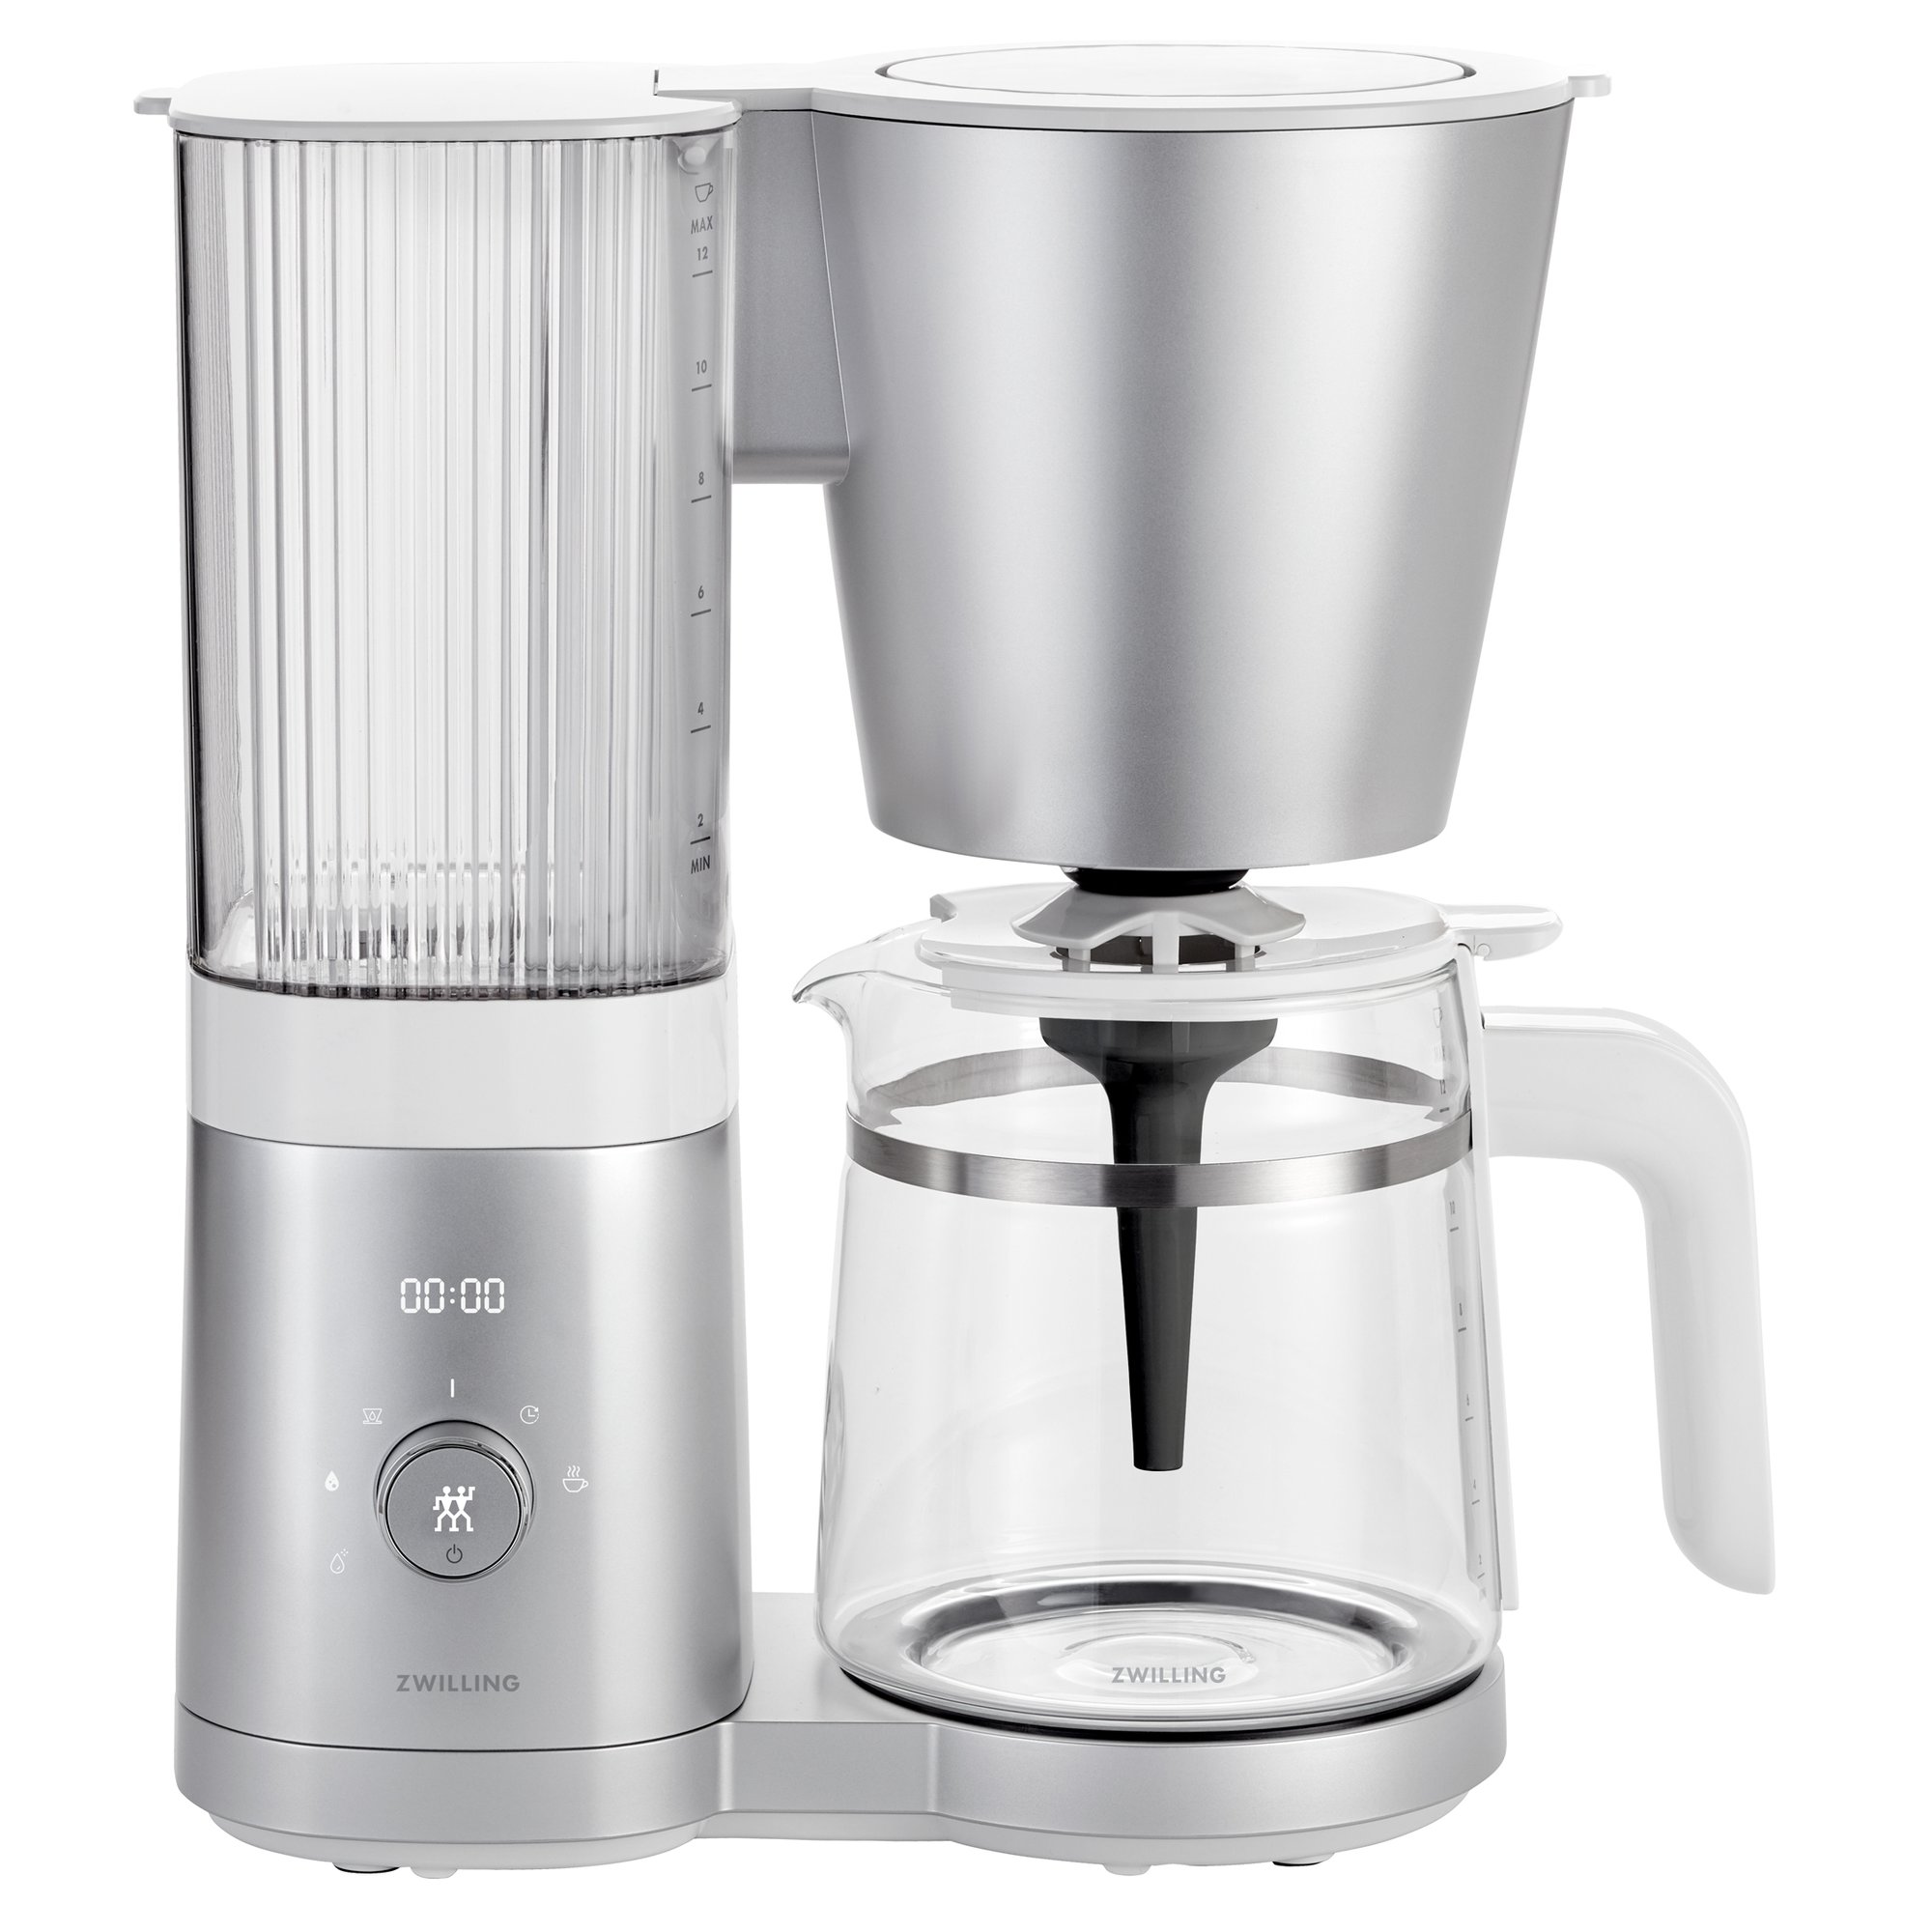 1: Zwilling Enfinigy kaffemaskine, 1,5 liter, sølv & hvid